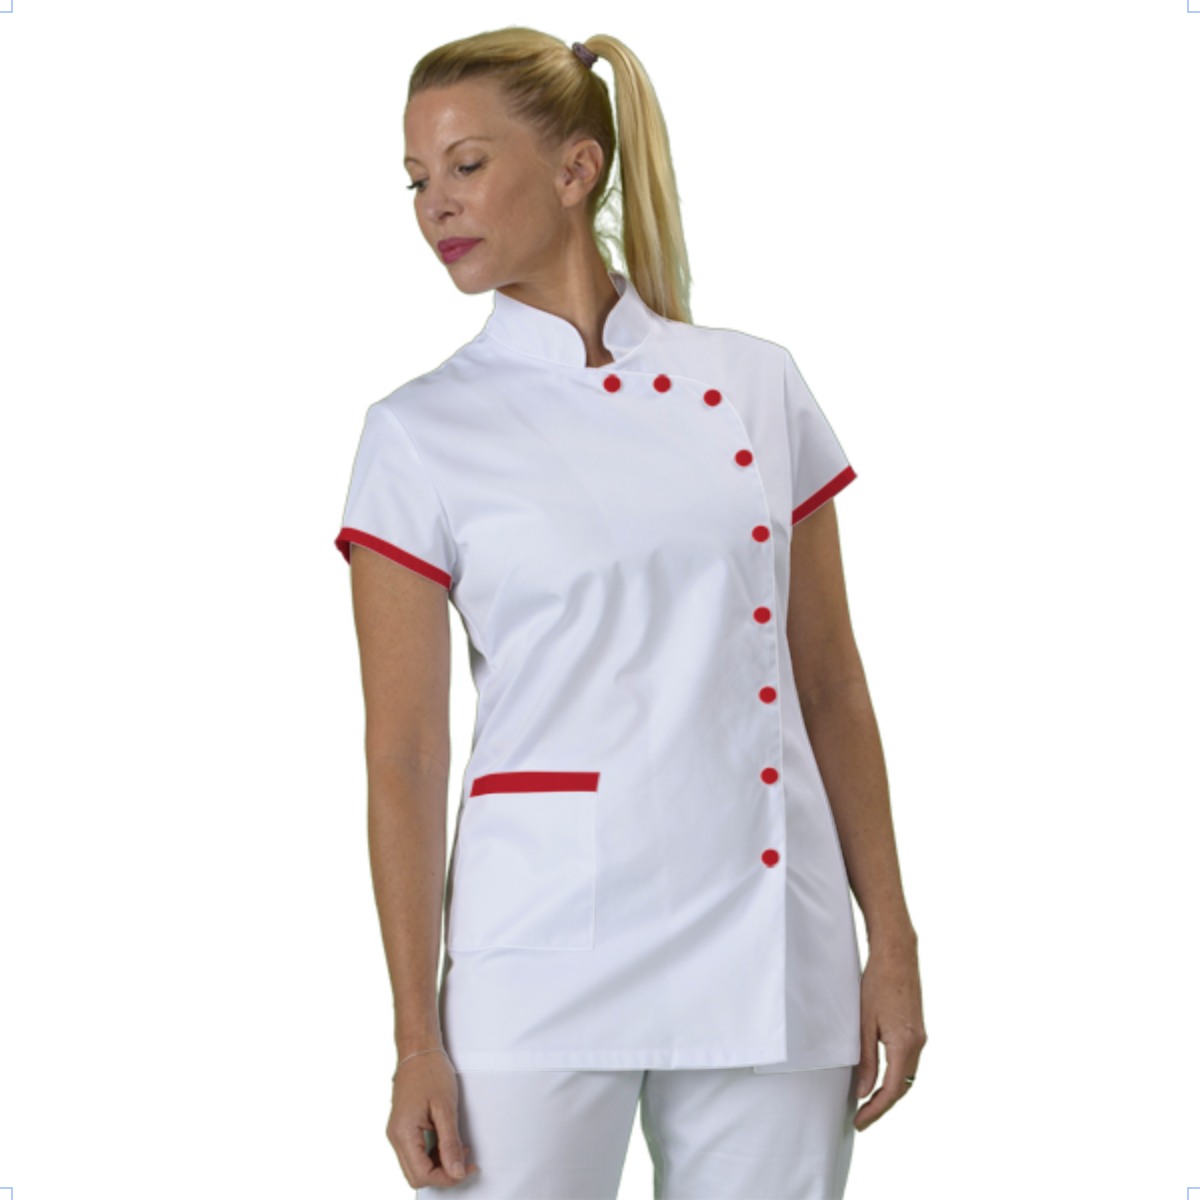 tunique-medicale-infirmiere-personnalisee-col-mao acheté - par Mélanie  - le 29-07-2021